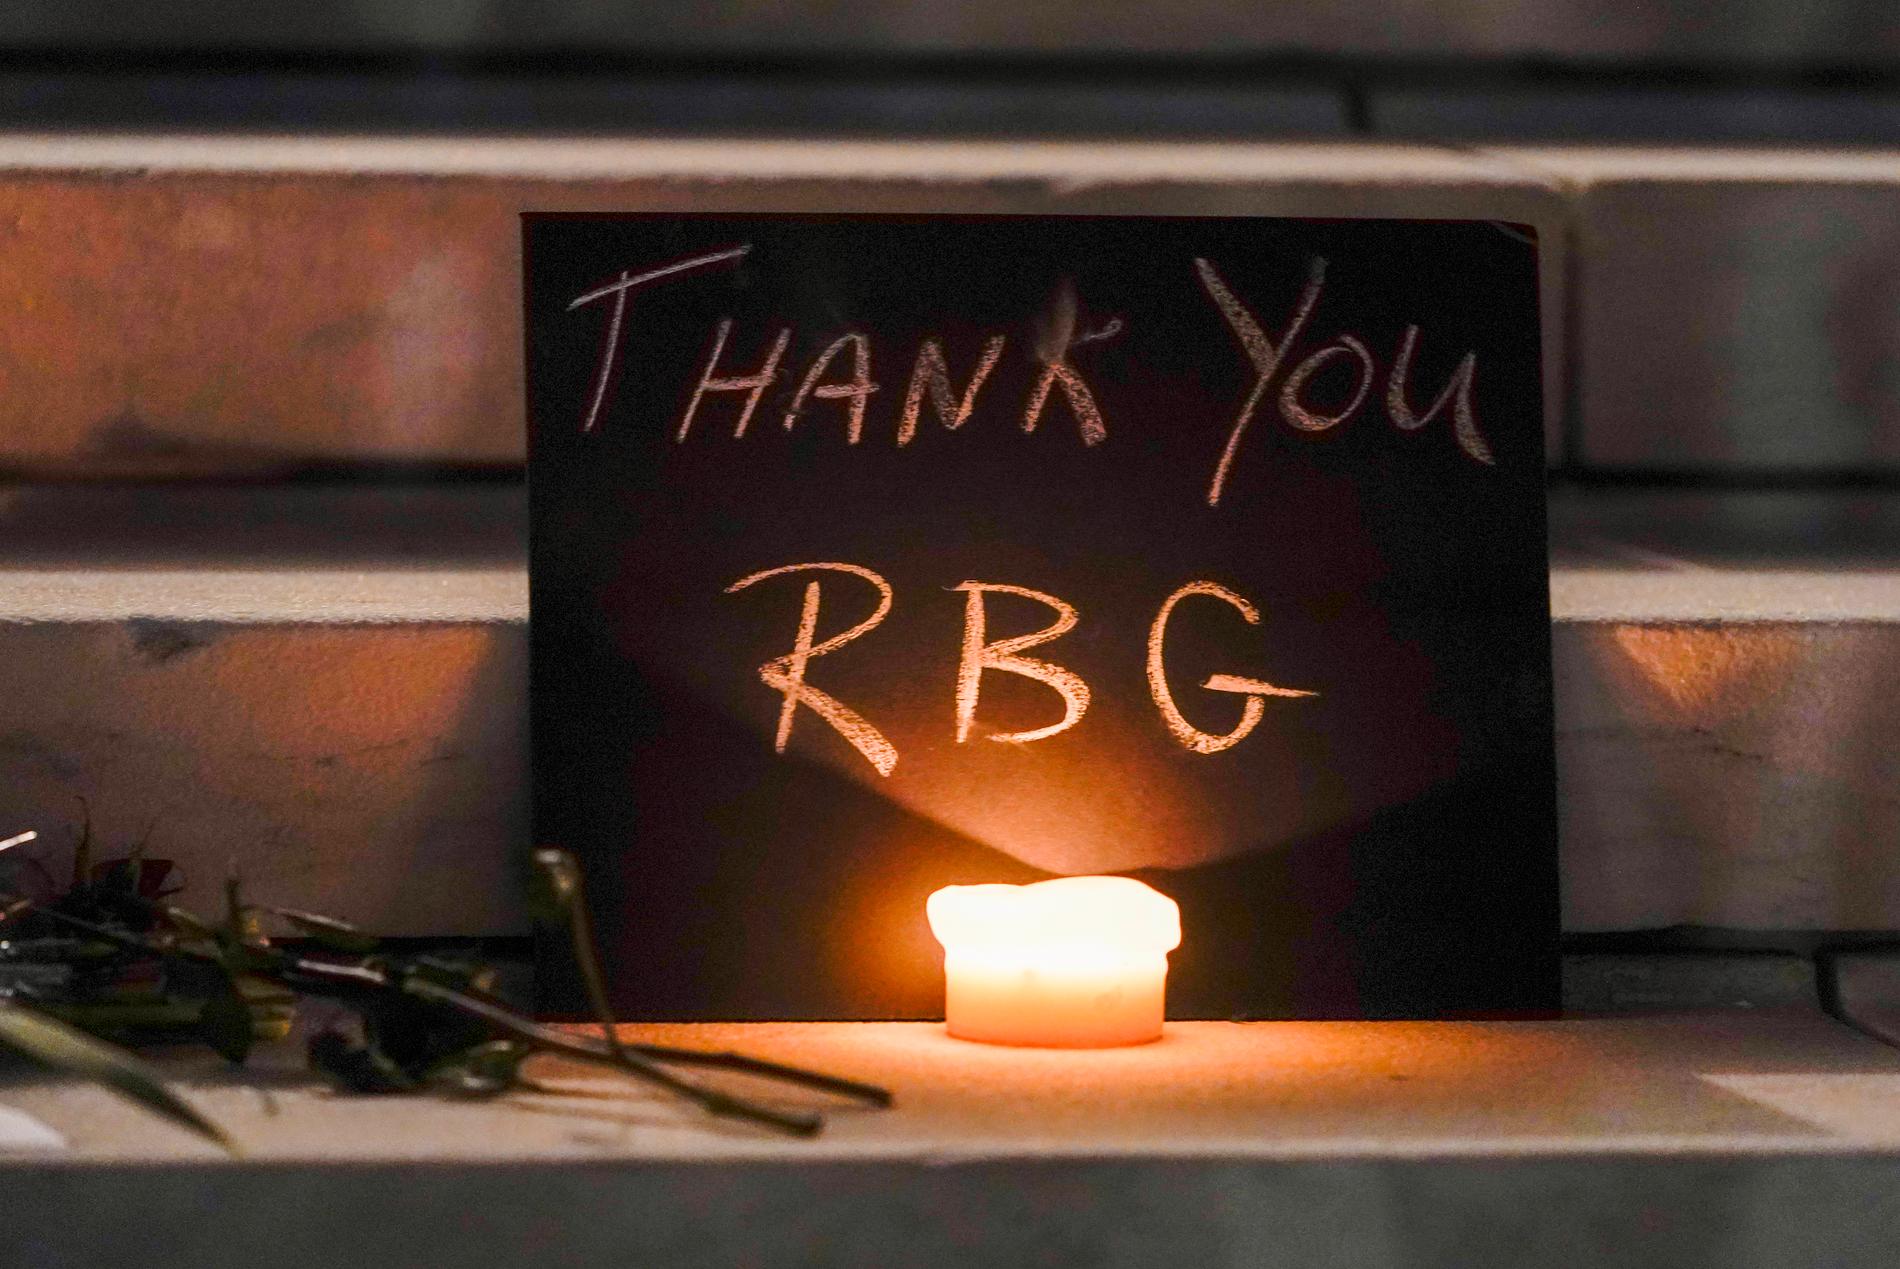 Ruth Bader Ginsburg kallades även "RBG" eller "Notorious RBG".